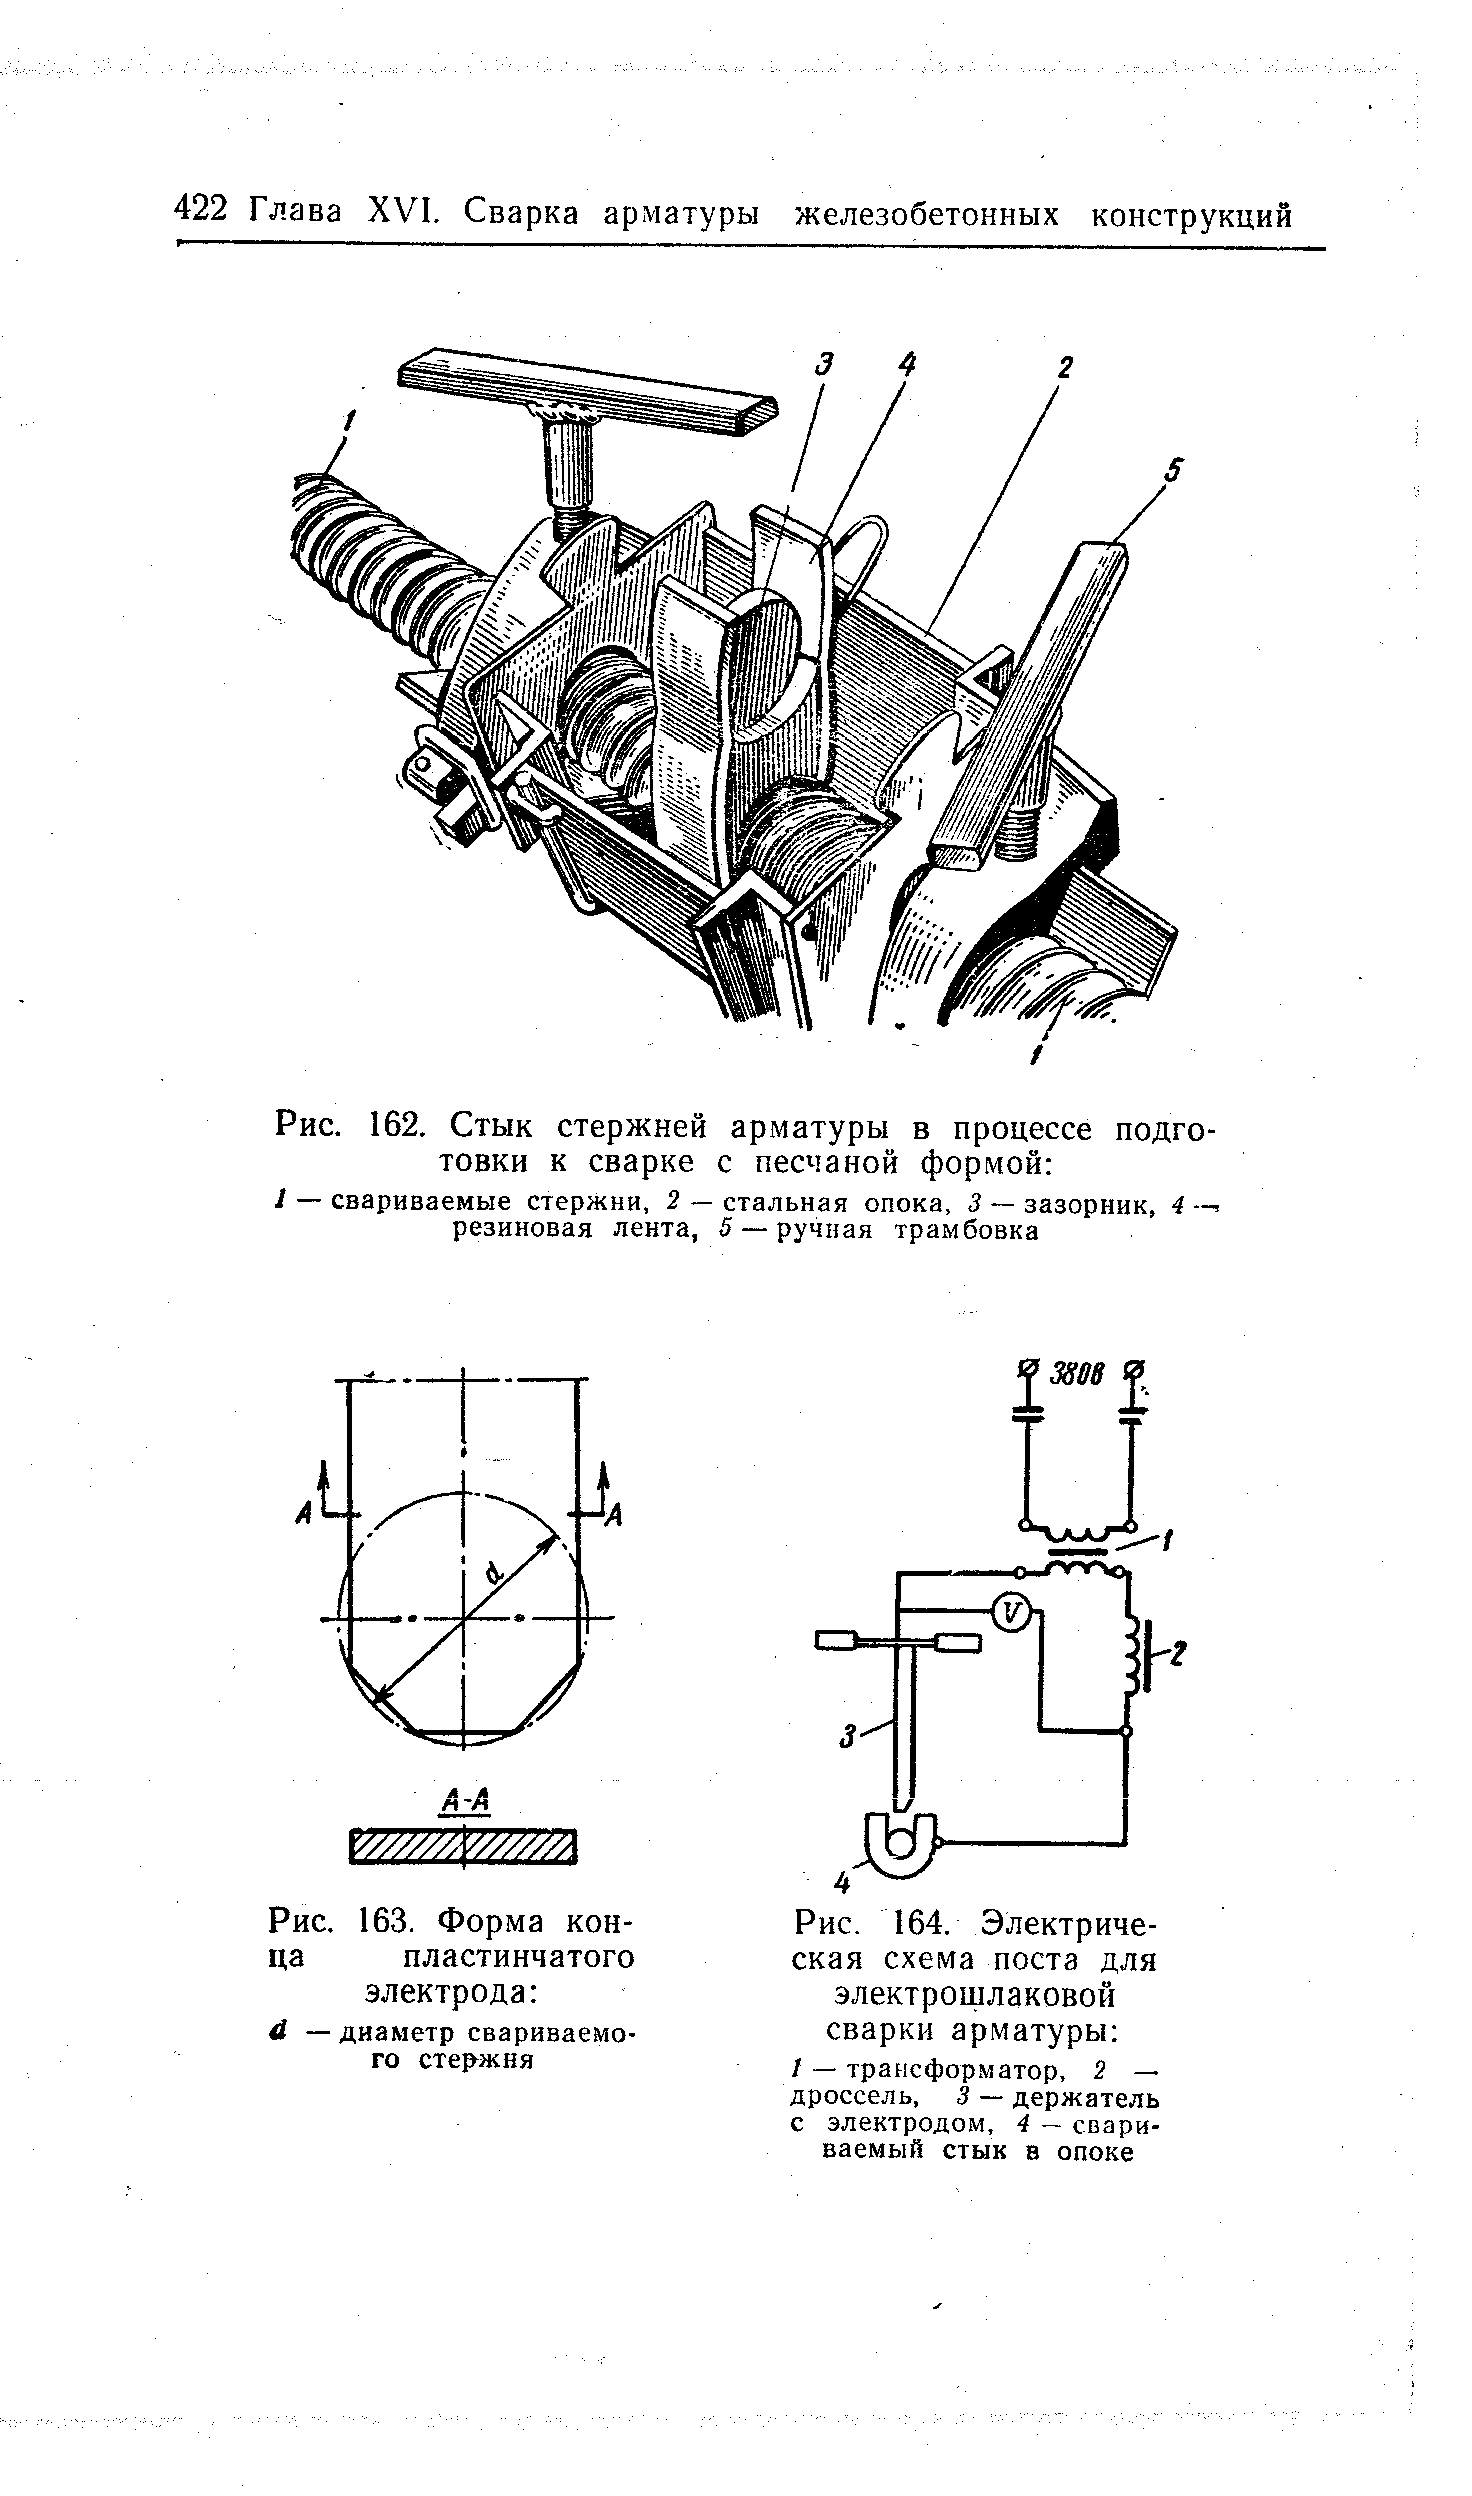 Рис. 163. Форма конца пластинчатого электрода й — диаметр свариваемого стержня
